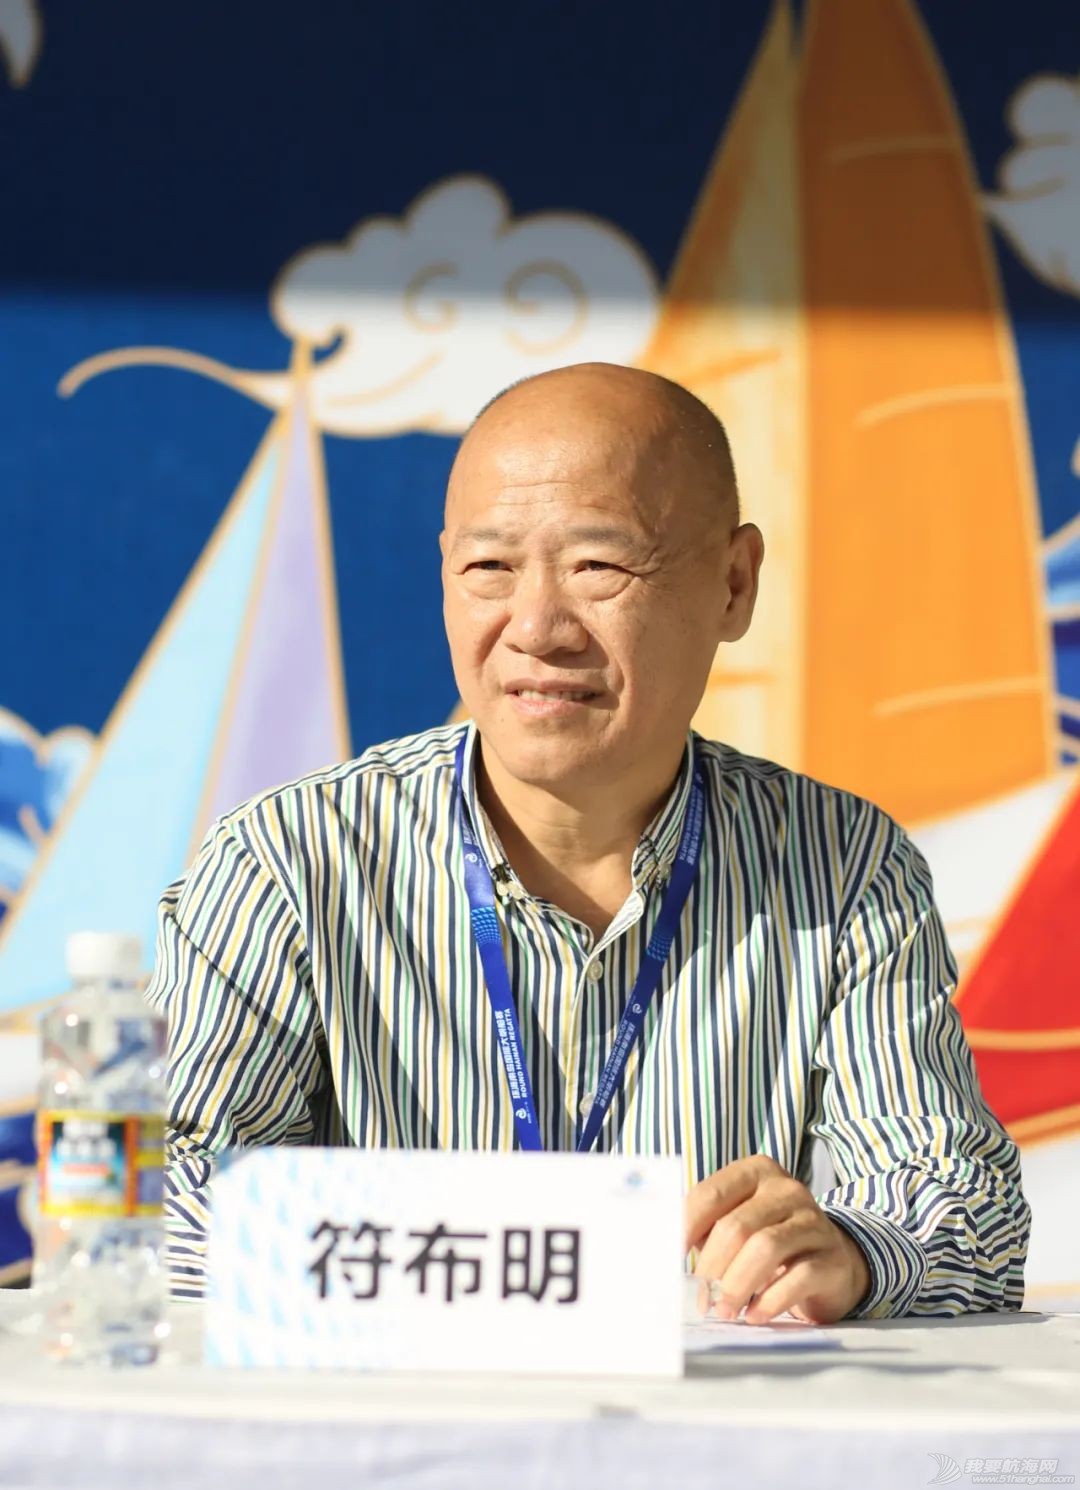 中国体育彩票杯2020第十一届海帆赛举行新闻发布会w5.jpg